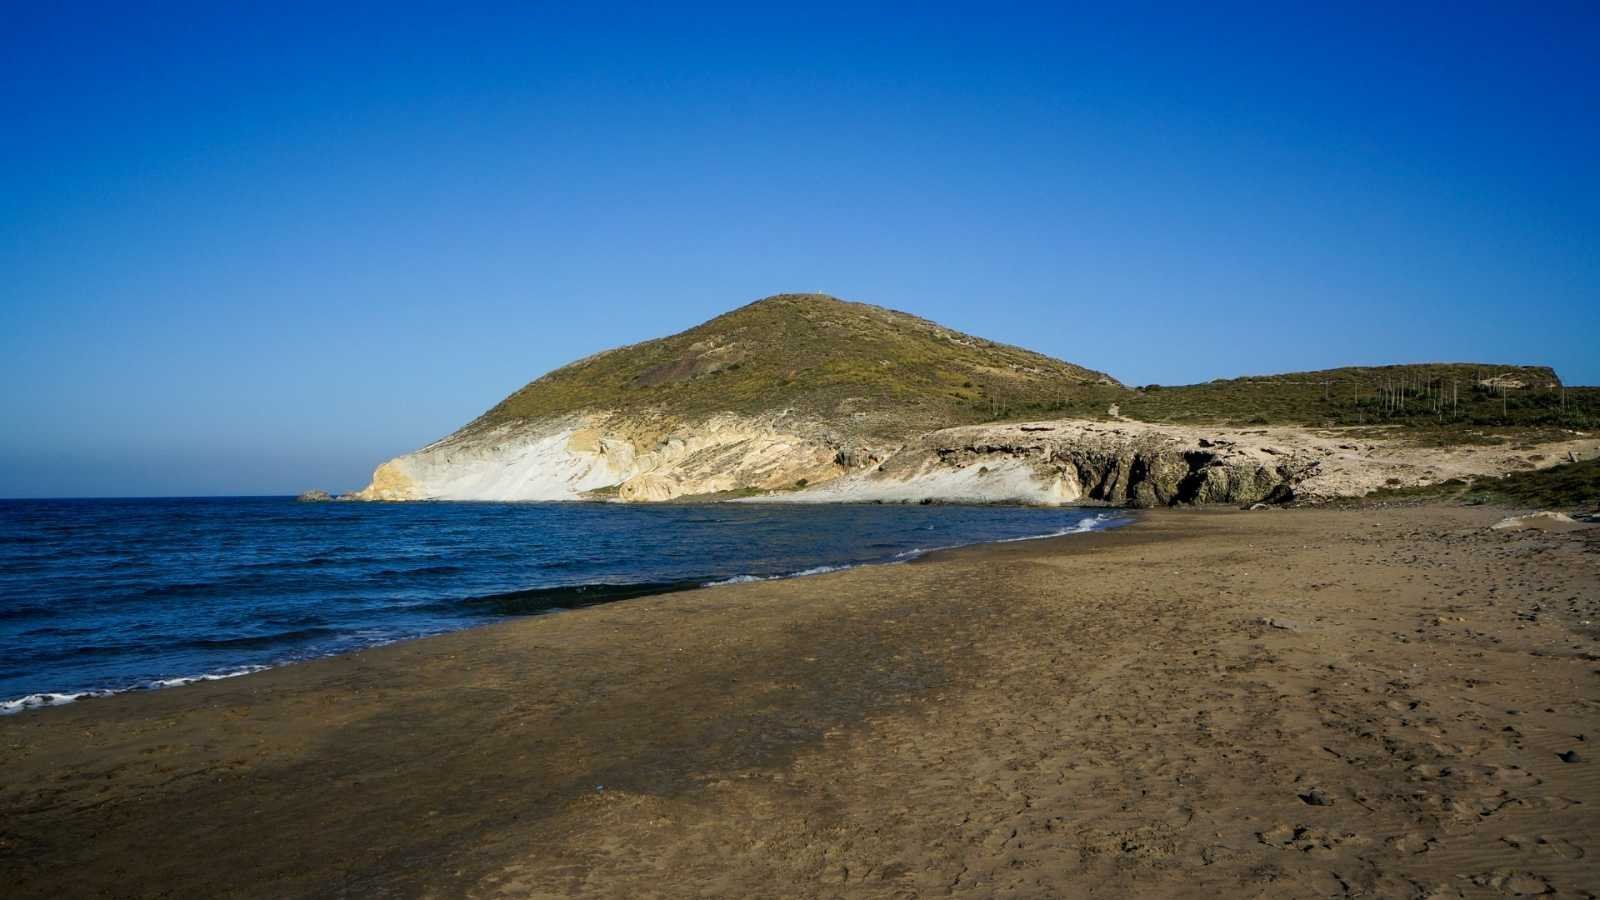 Petición de firmas para evitar la construcción de un hotel en el Parque Natural de Cabo de Gata-Níjar en Almería